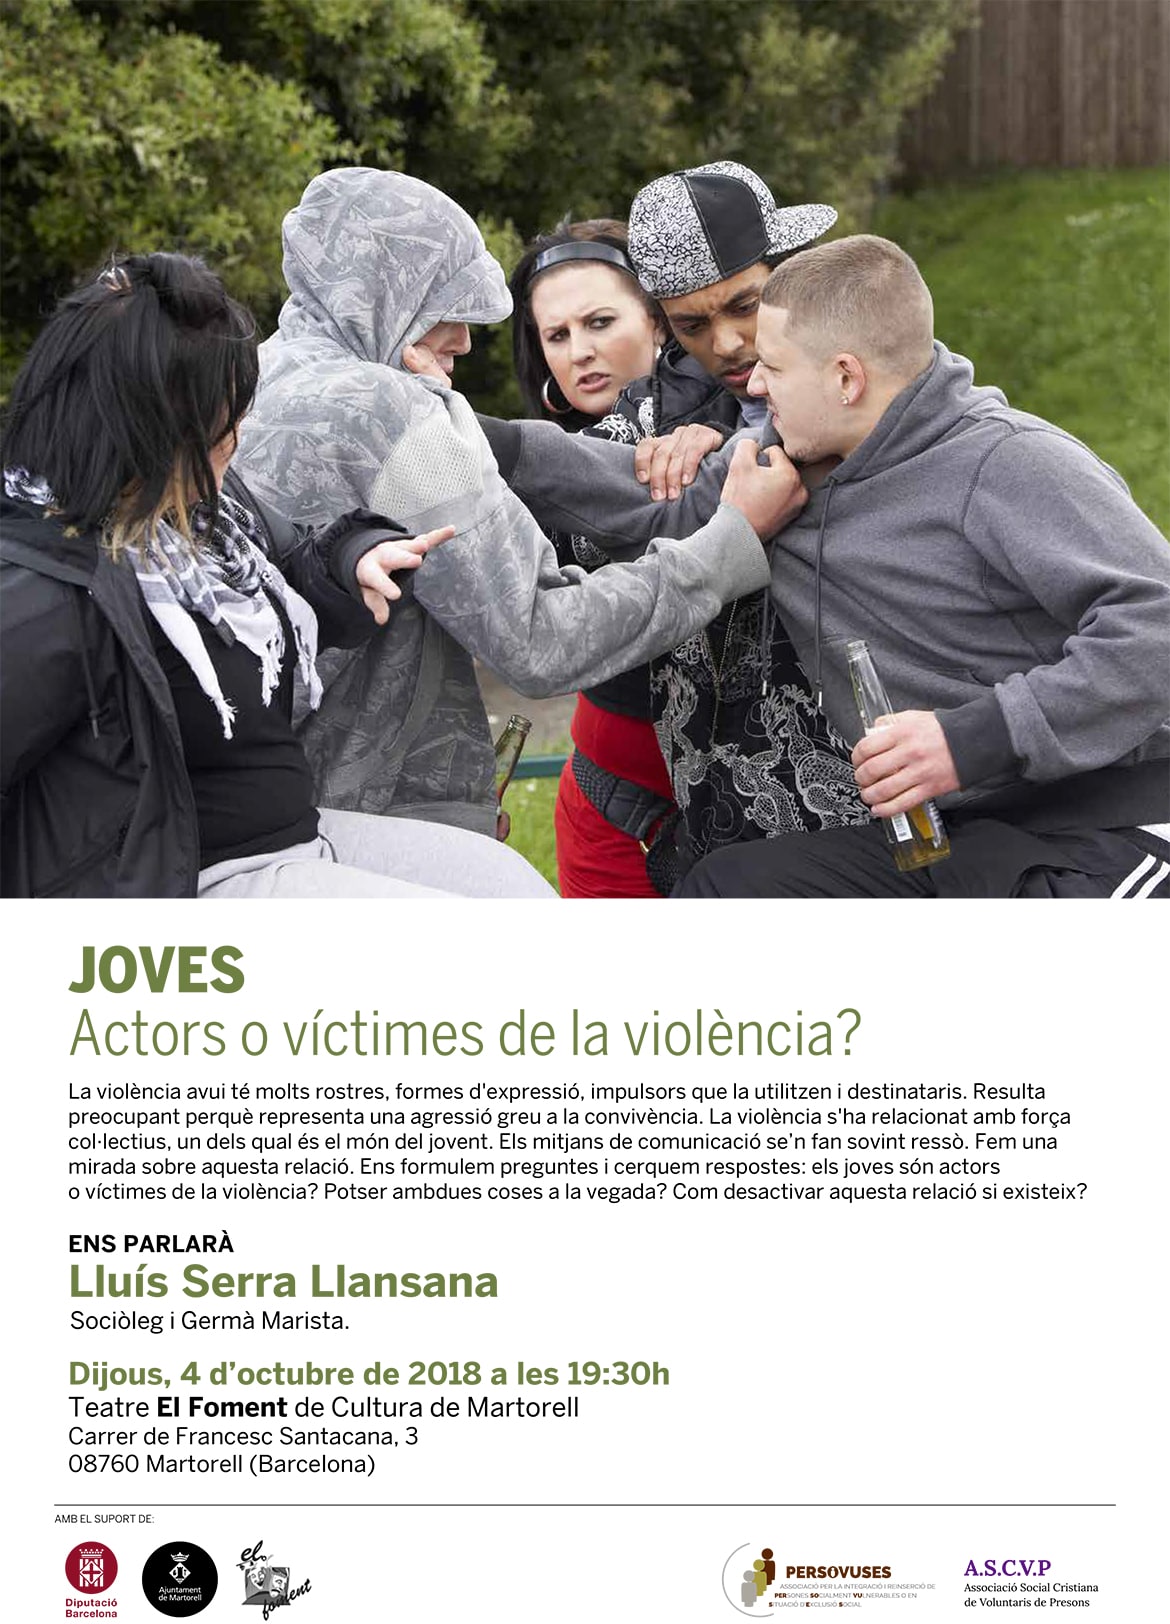 Joves: Actors o víctimes de la violencia?